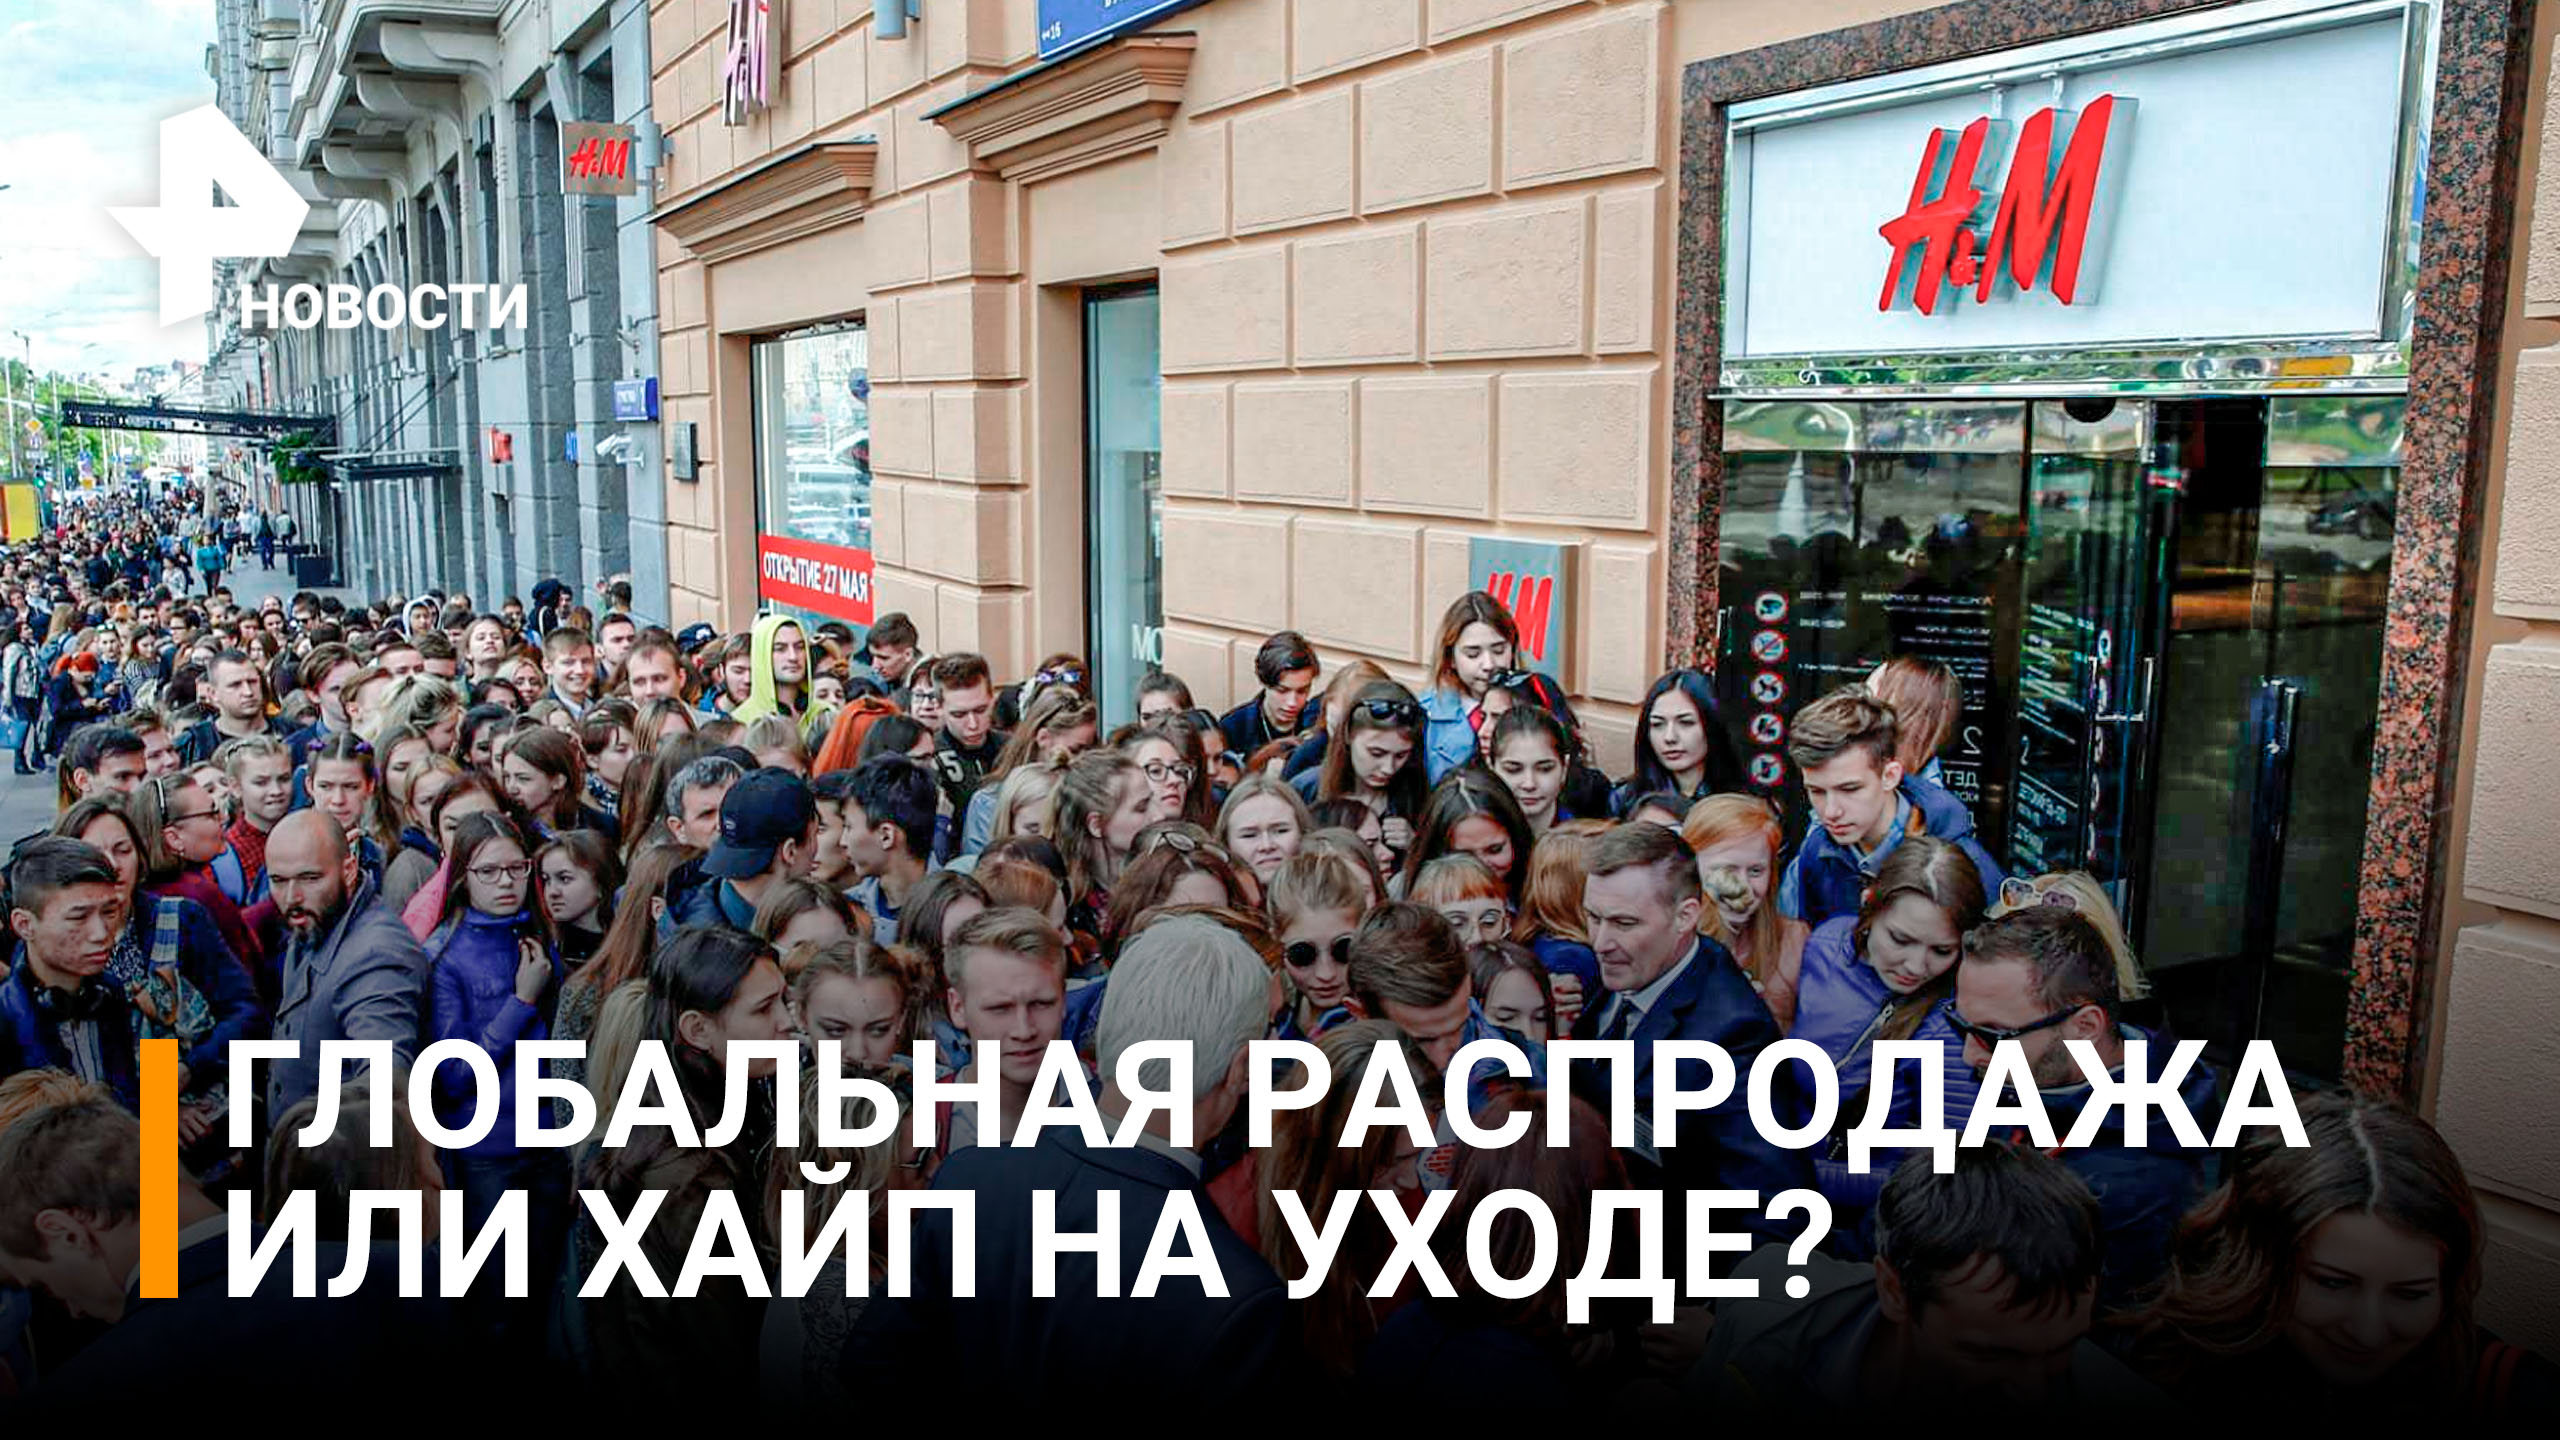 H&M с 1 августа временно откроет магазины в России / РЕН Новости